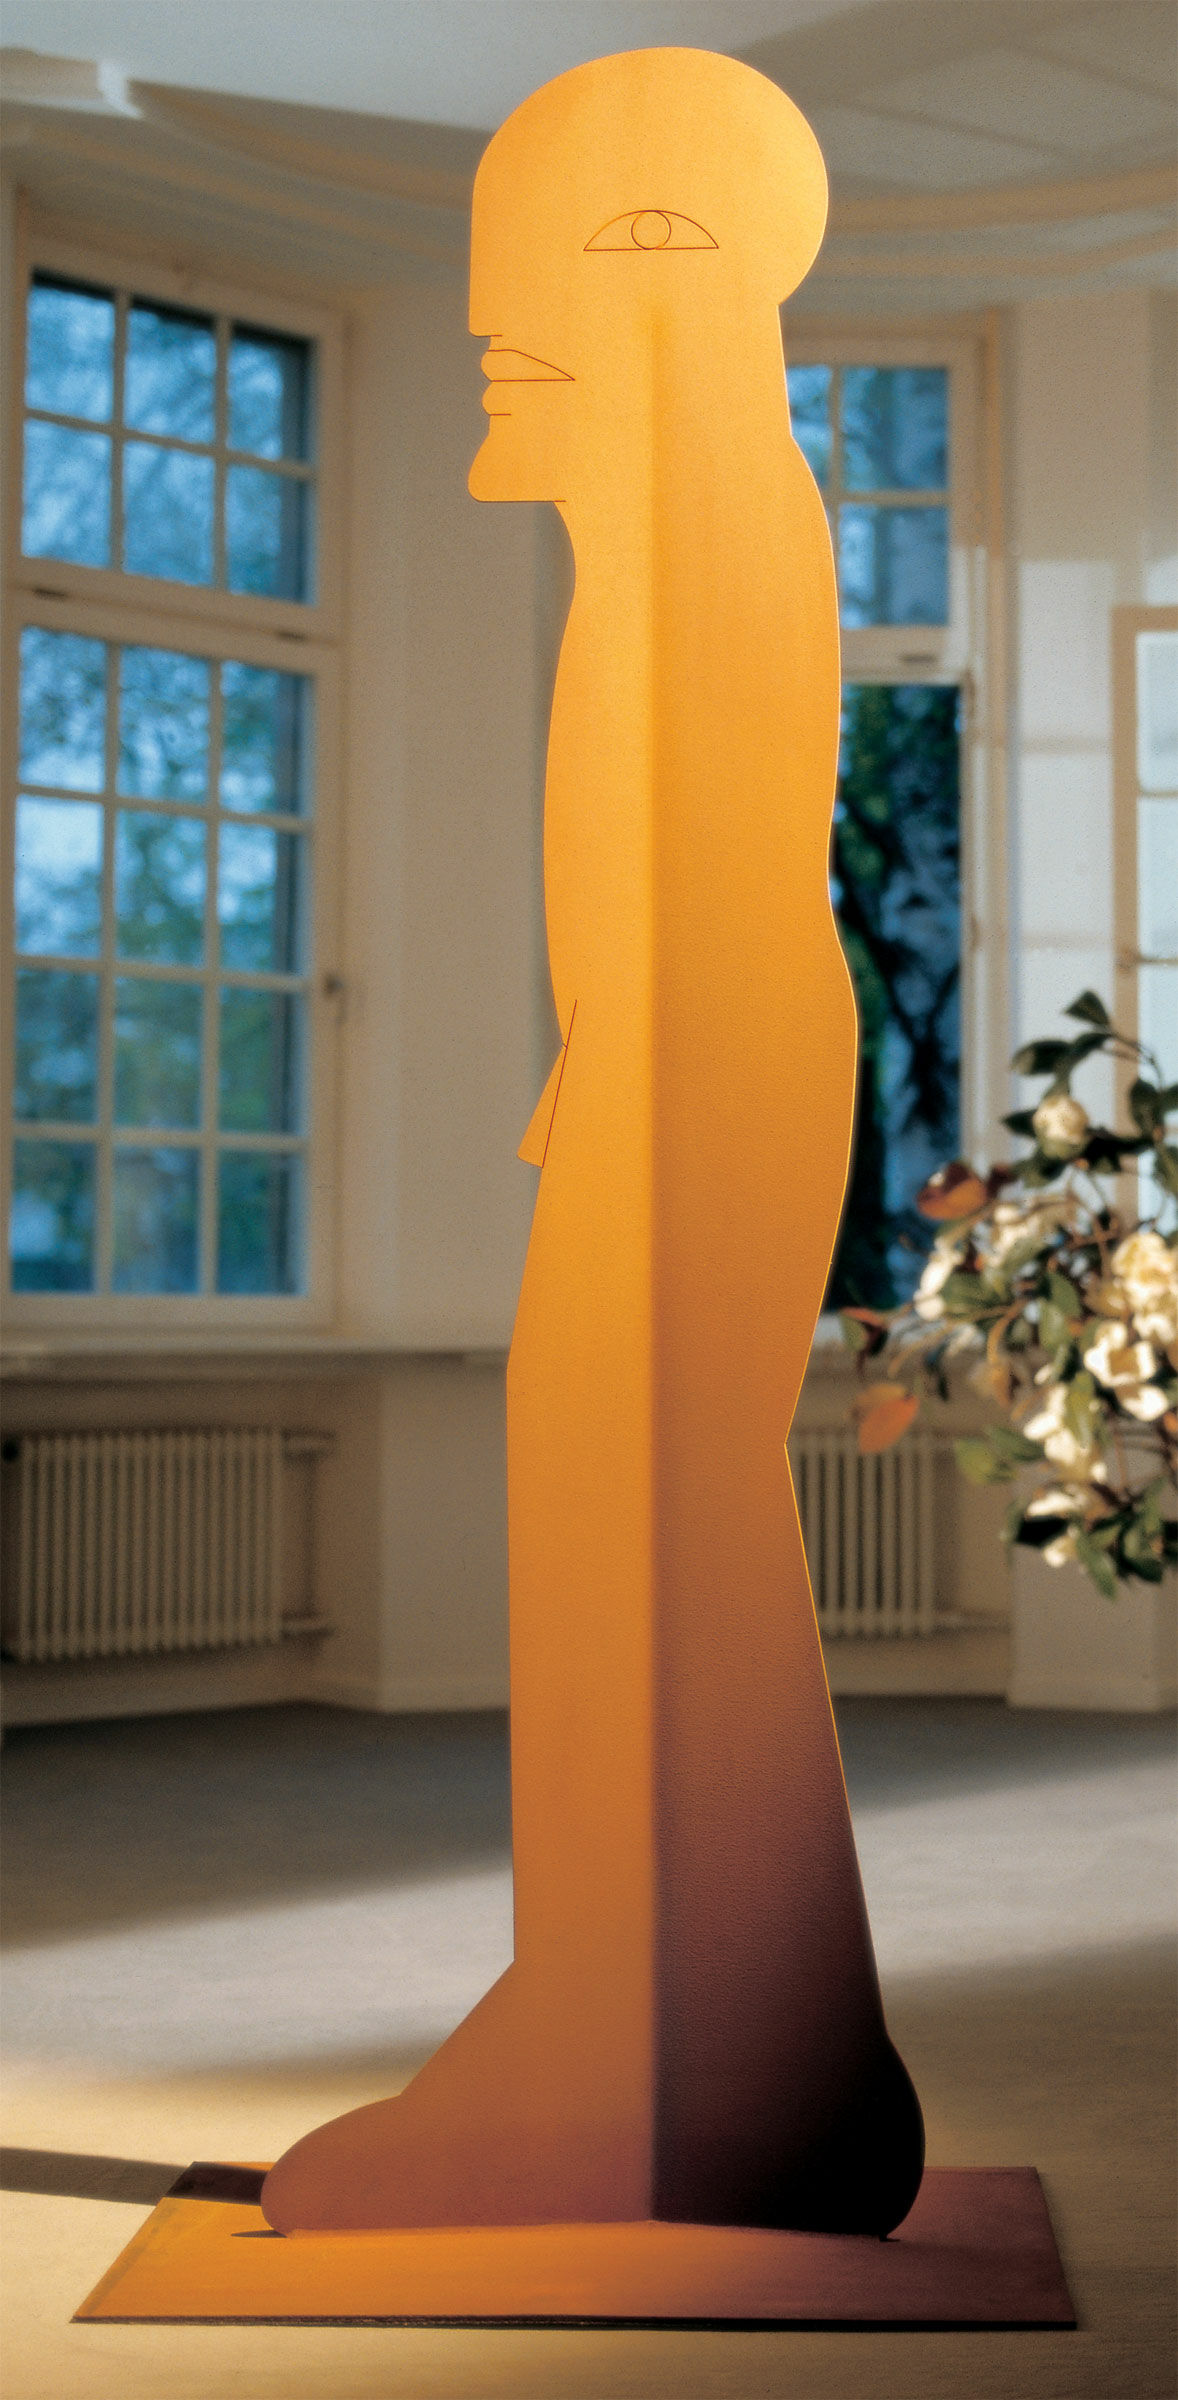 Stahlskulptur "Figur 1000" von Horst Antes